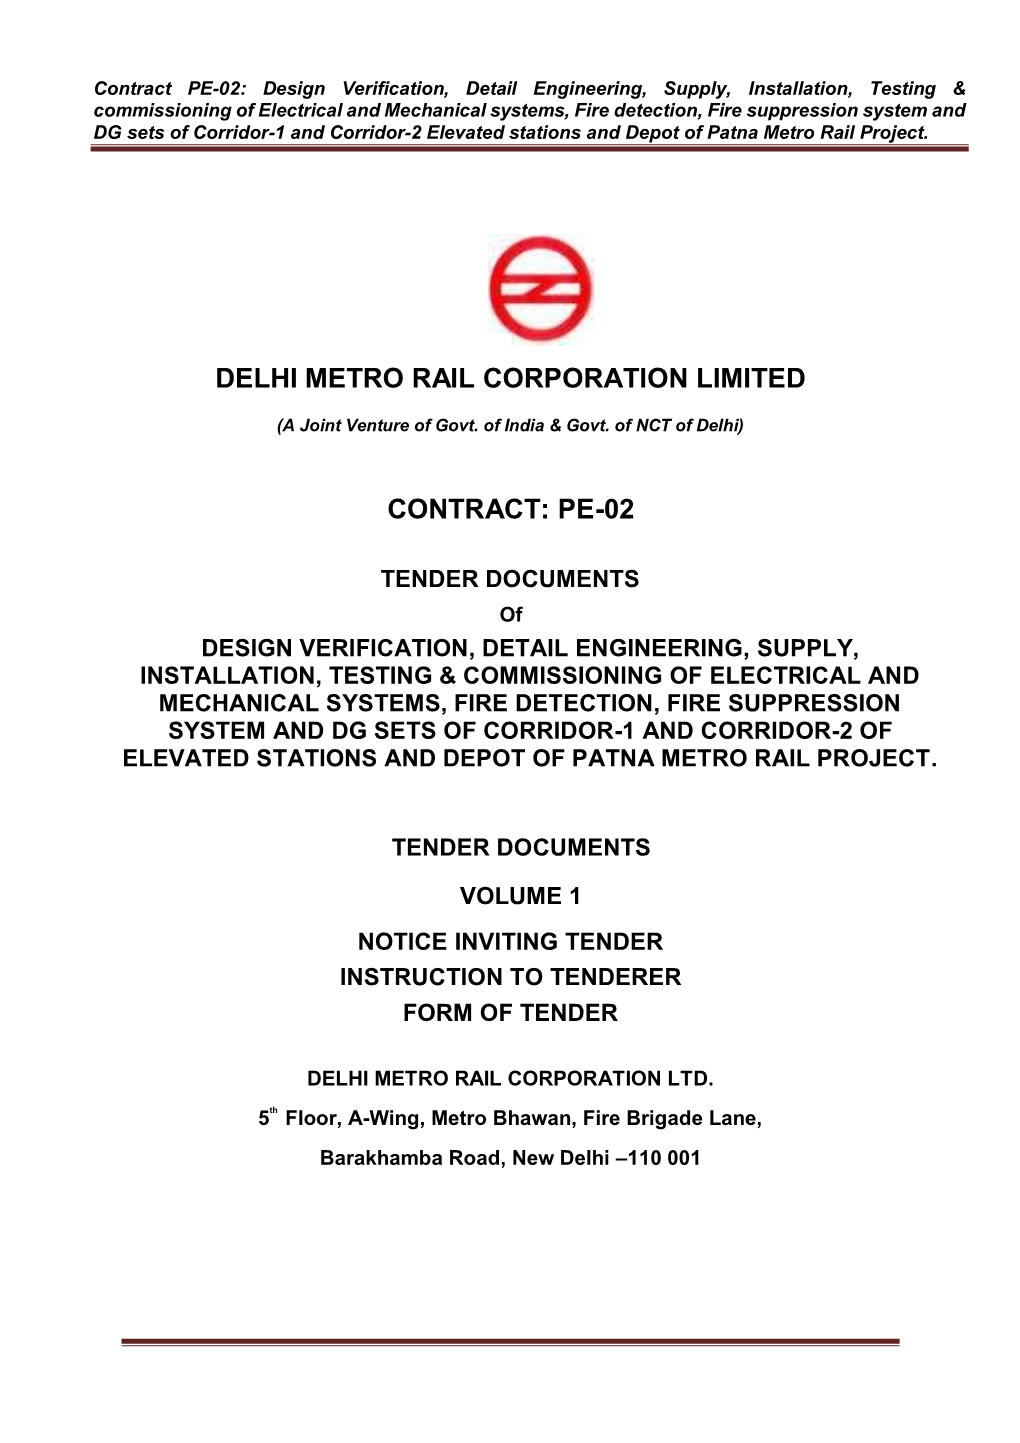 Delhi Metro Rail Corporation Limited Contract: Pe-02